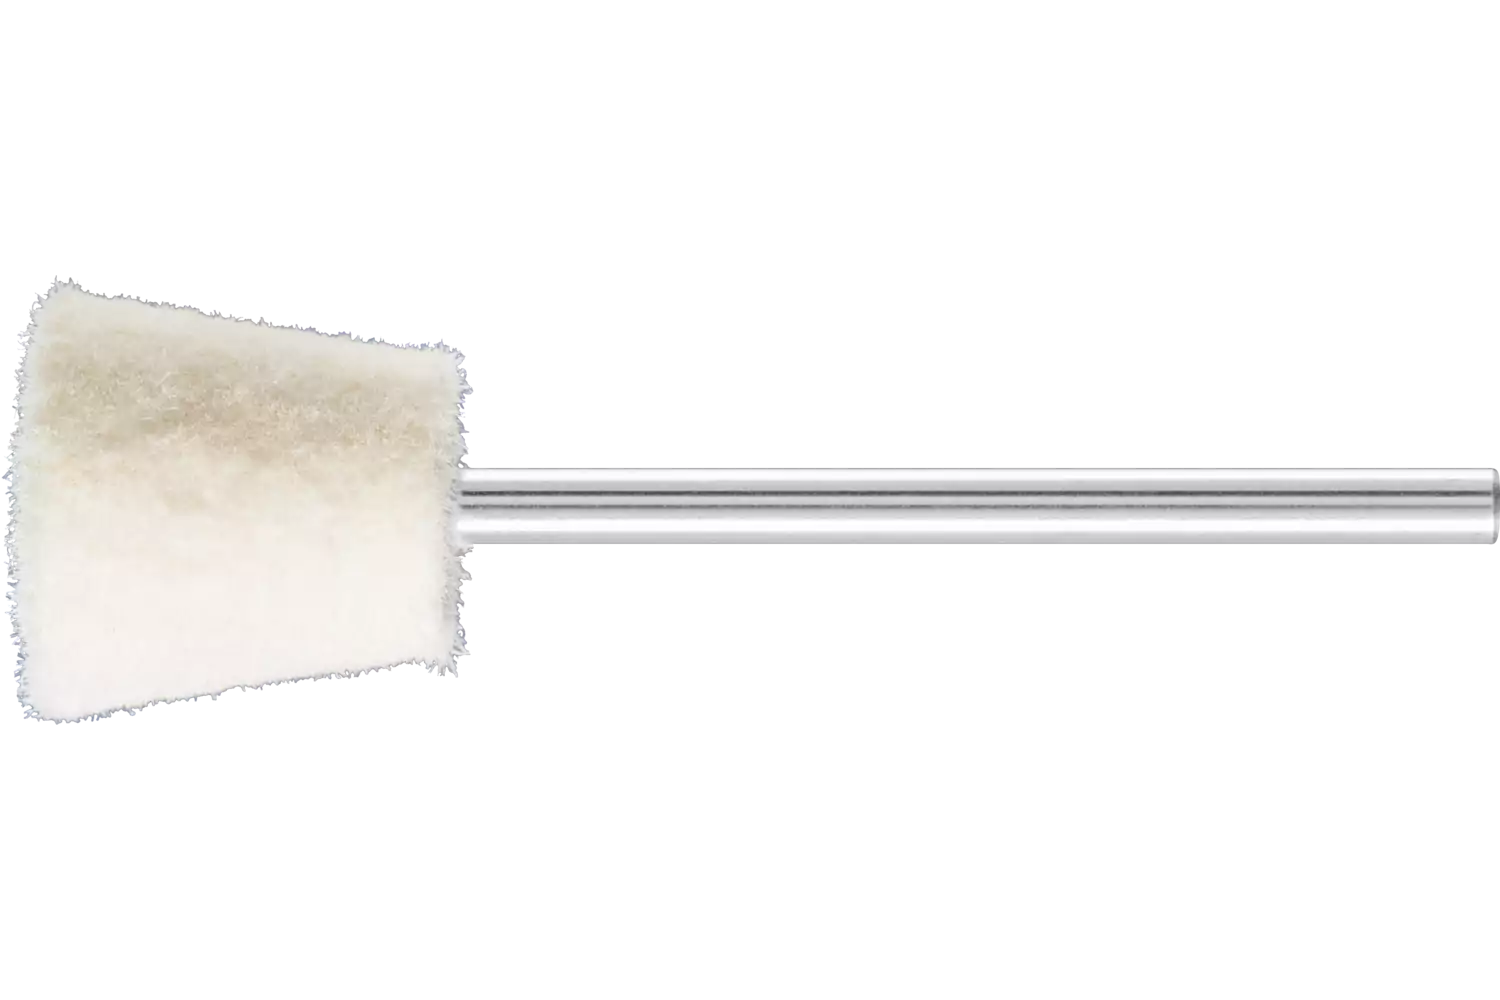 Feltri con gambo per lucidare medio-duri forma a cono rovesciato Ø 12x12 mm, gambo Ø 2,35 mm 1